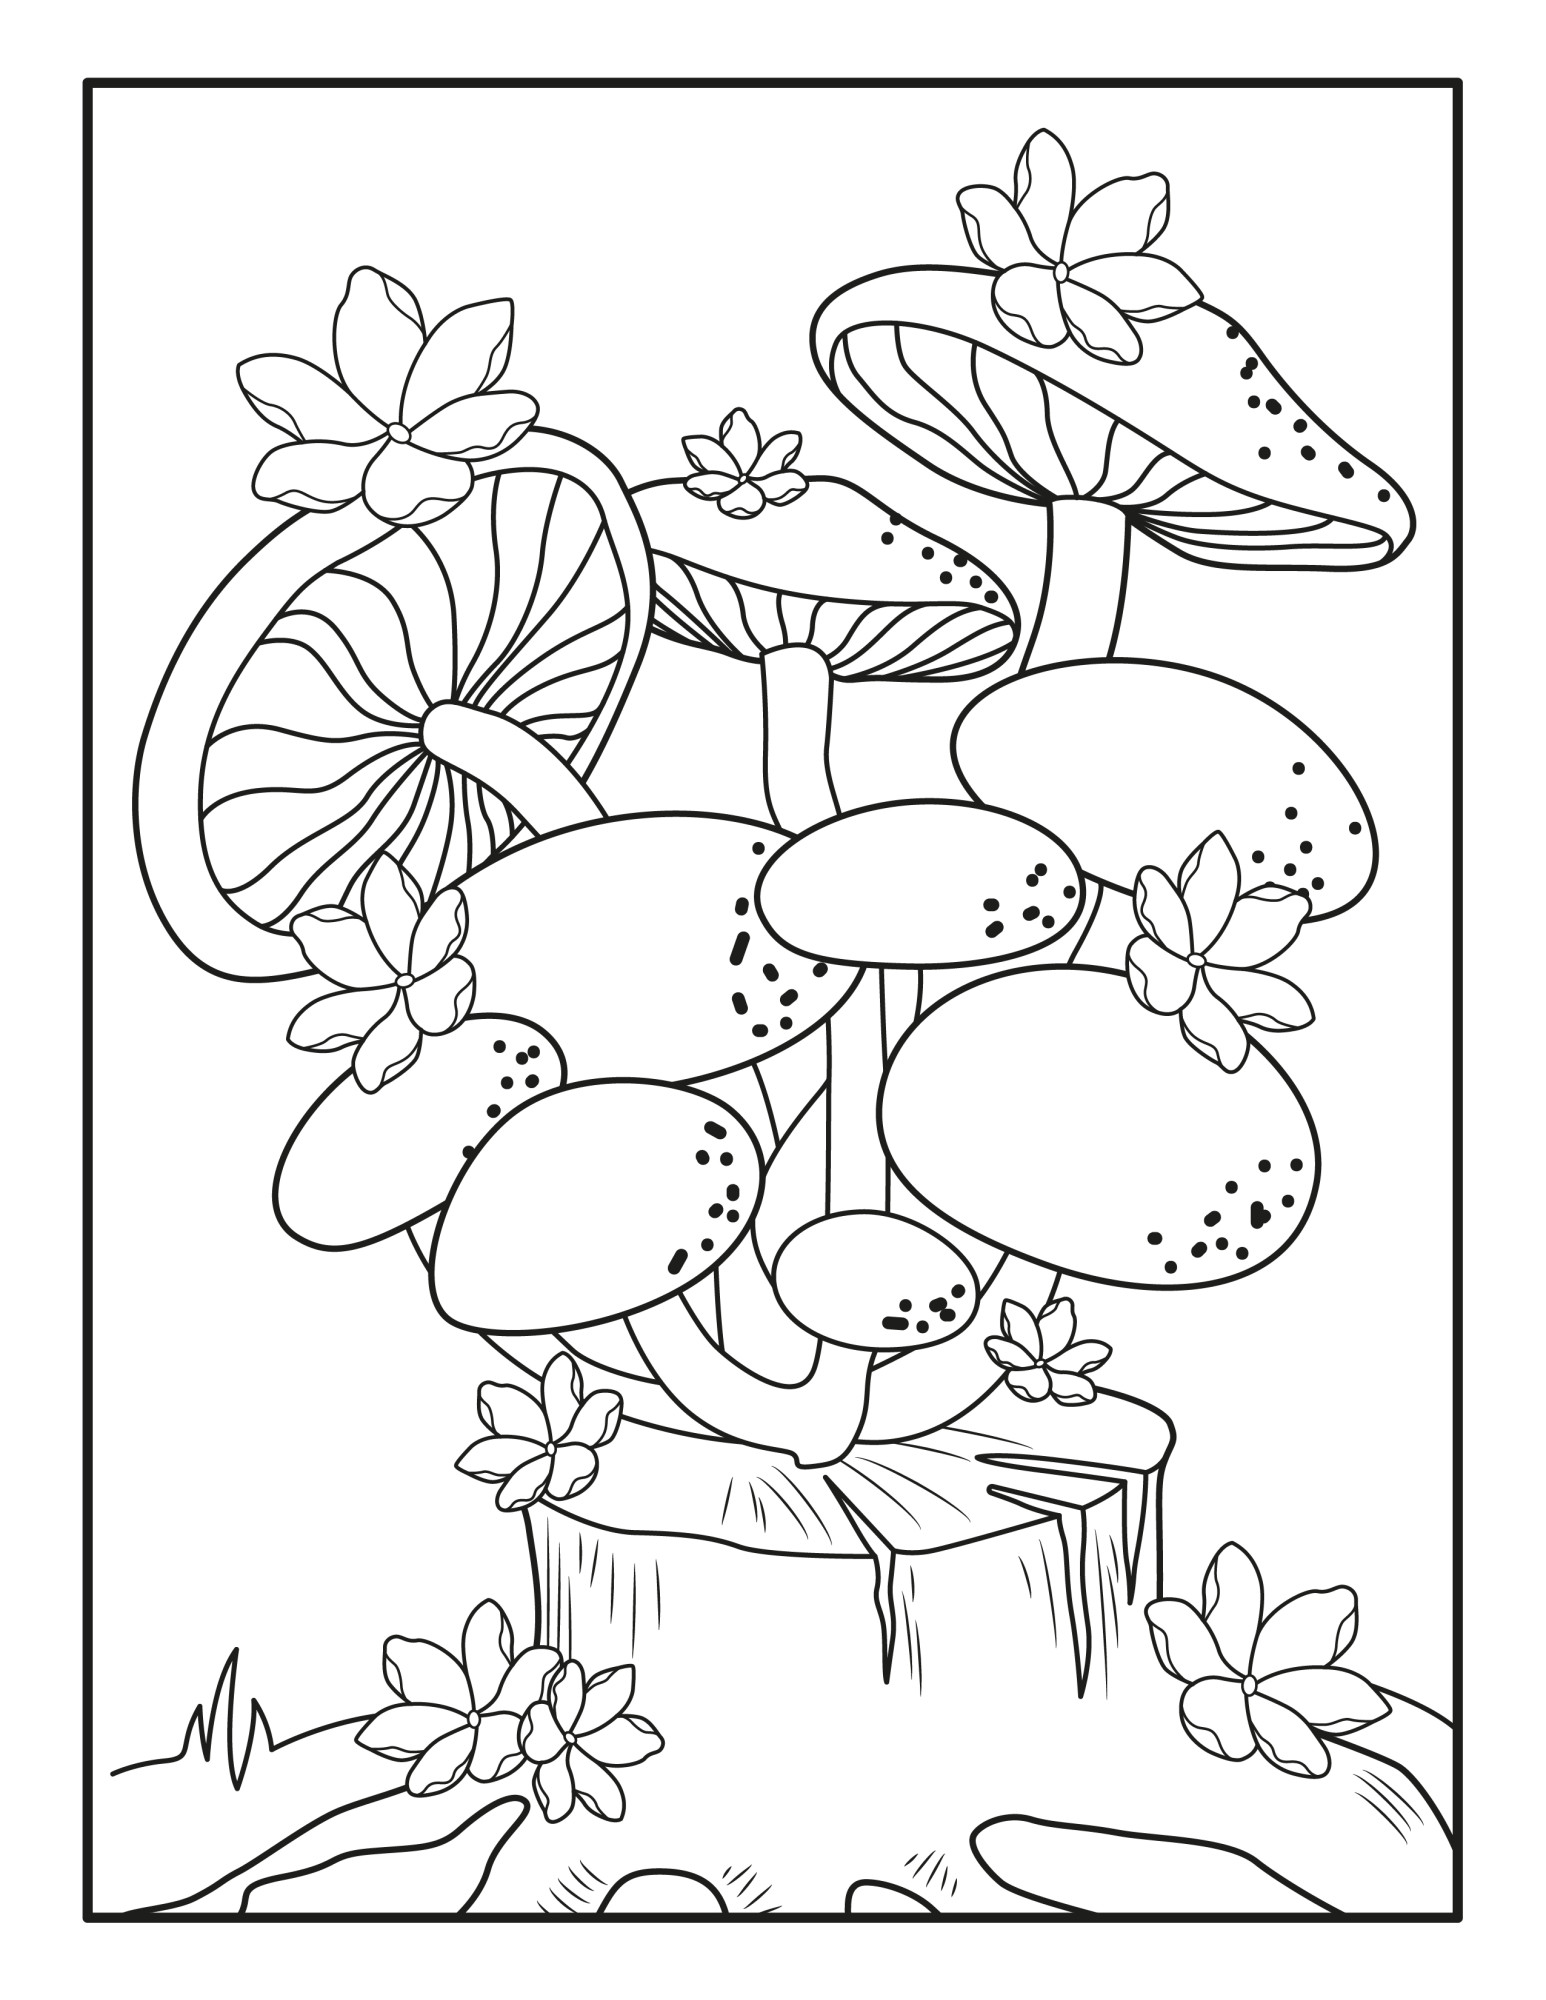 Раскраска для детей: грибы на пеньке с цветами